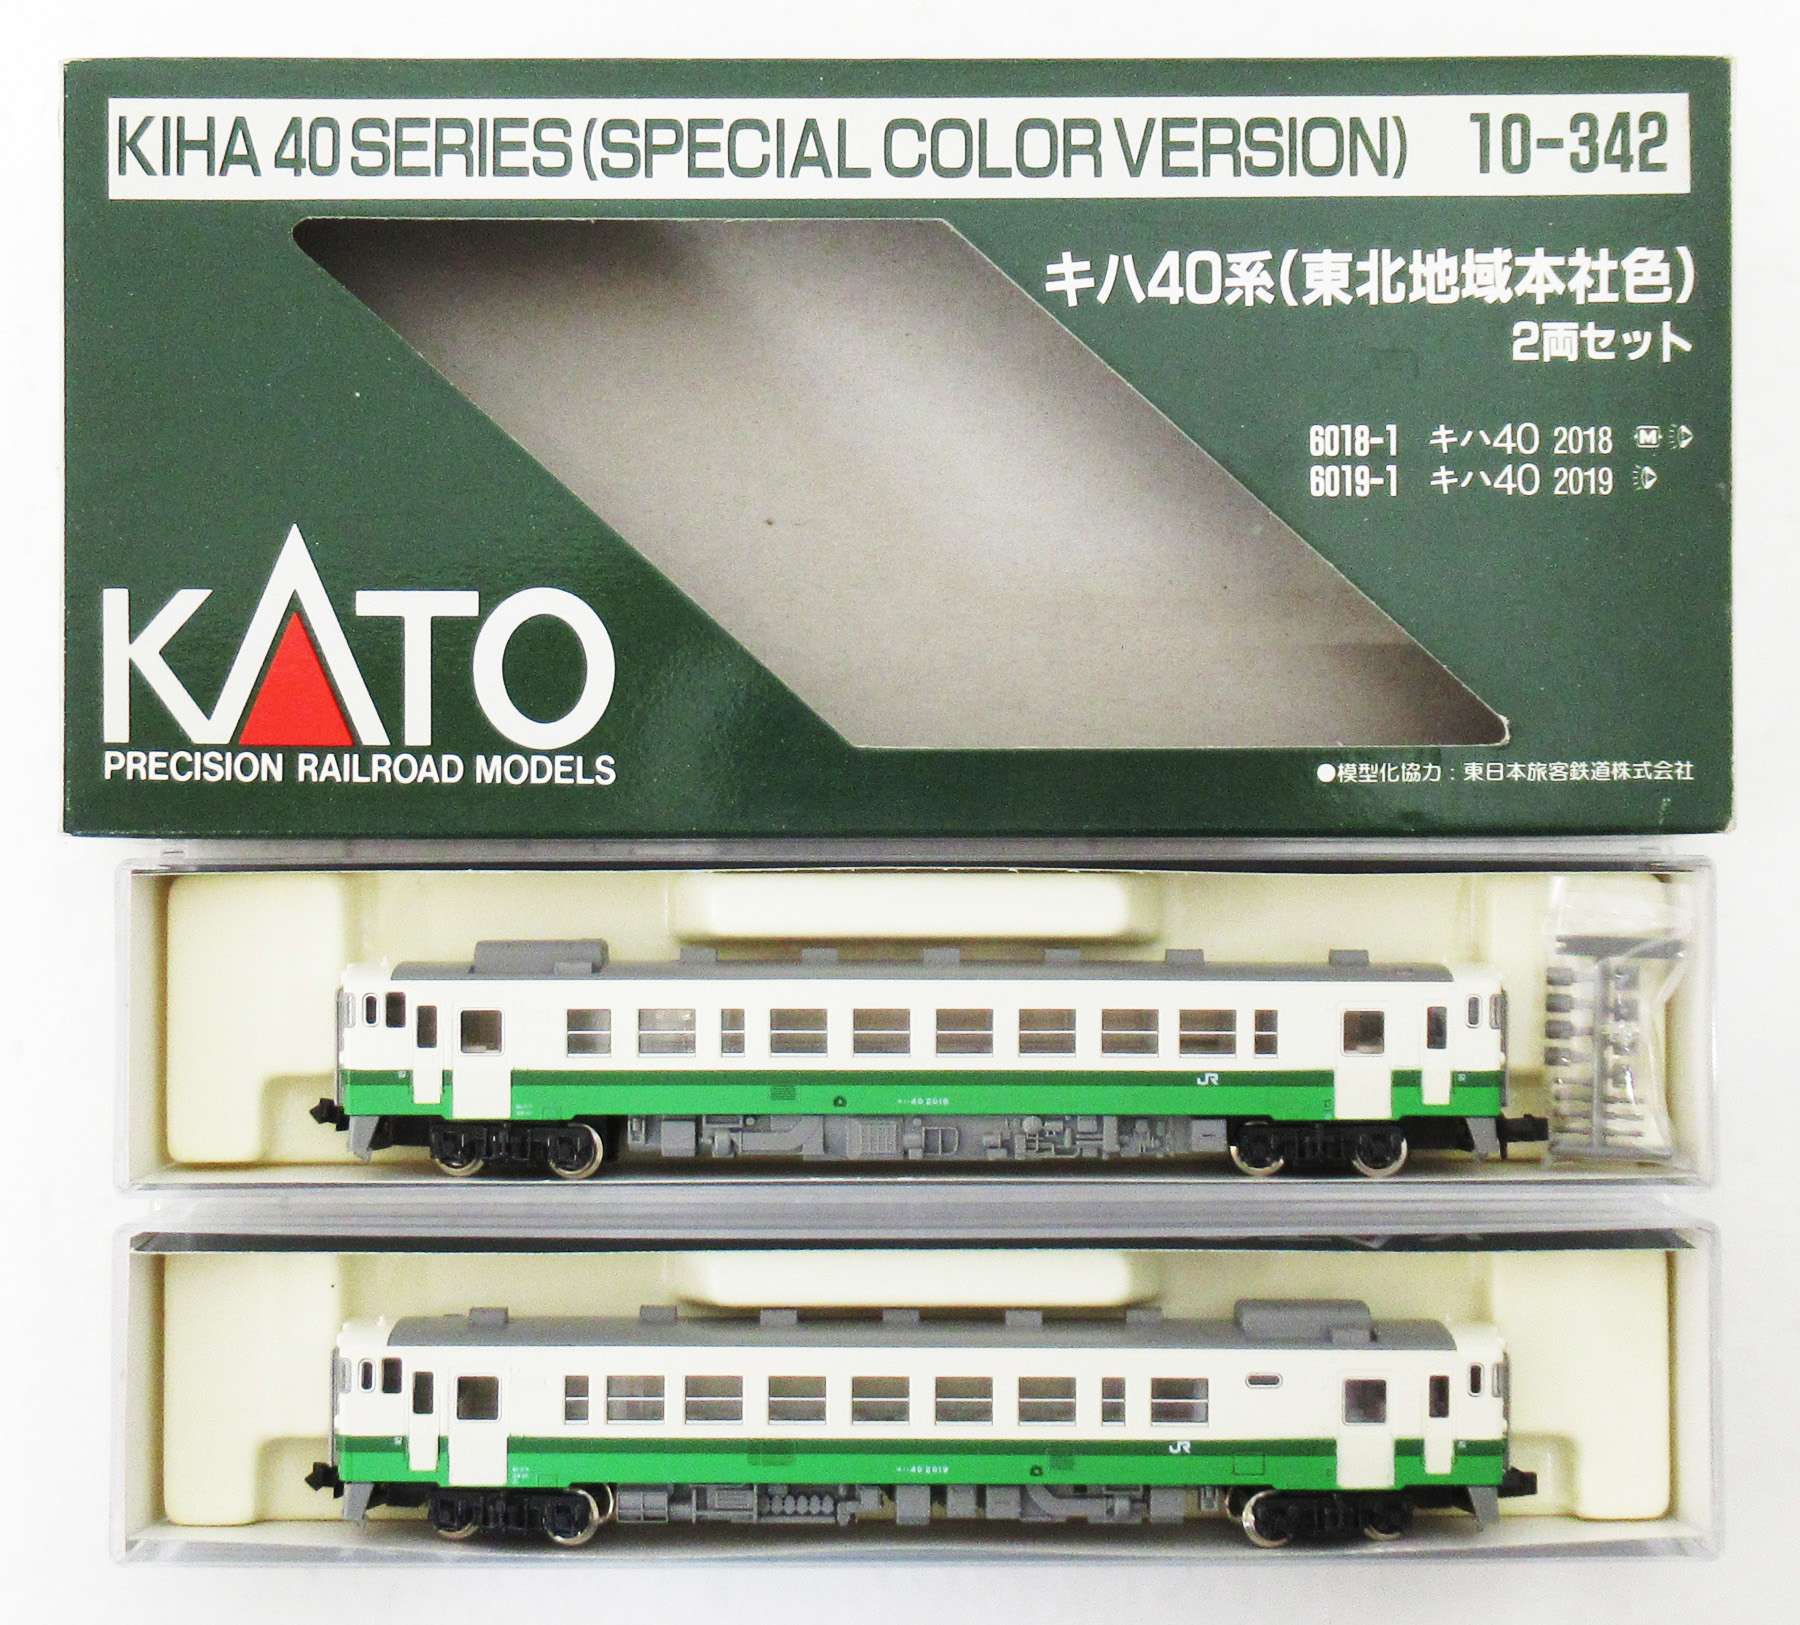 公式]鉄道模型(10-342キハ40系(東北地域本社色) 2両セット)商品詳細 